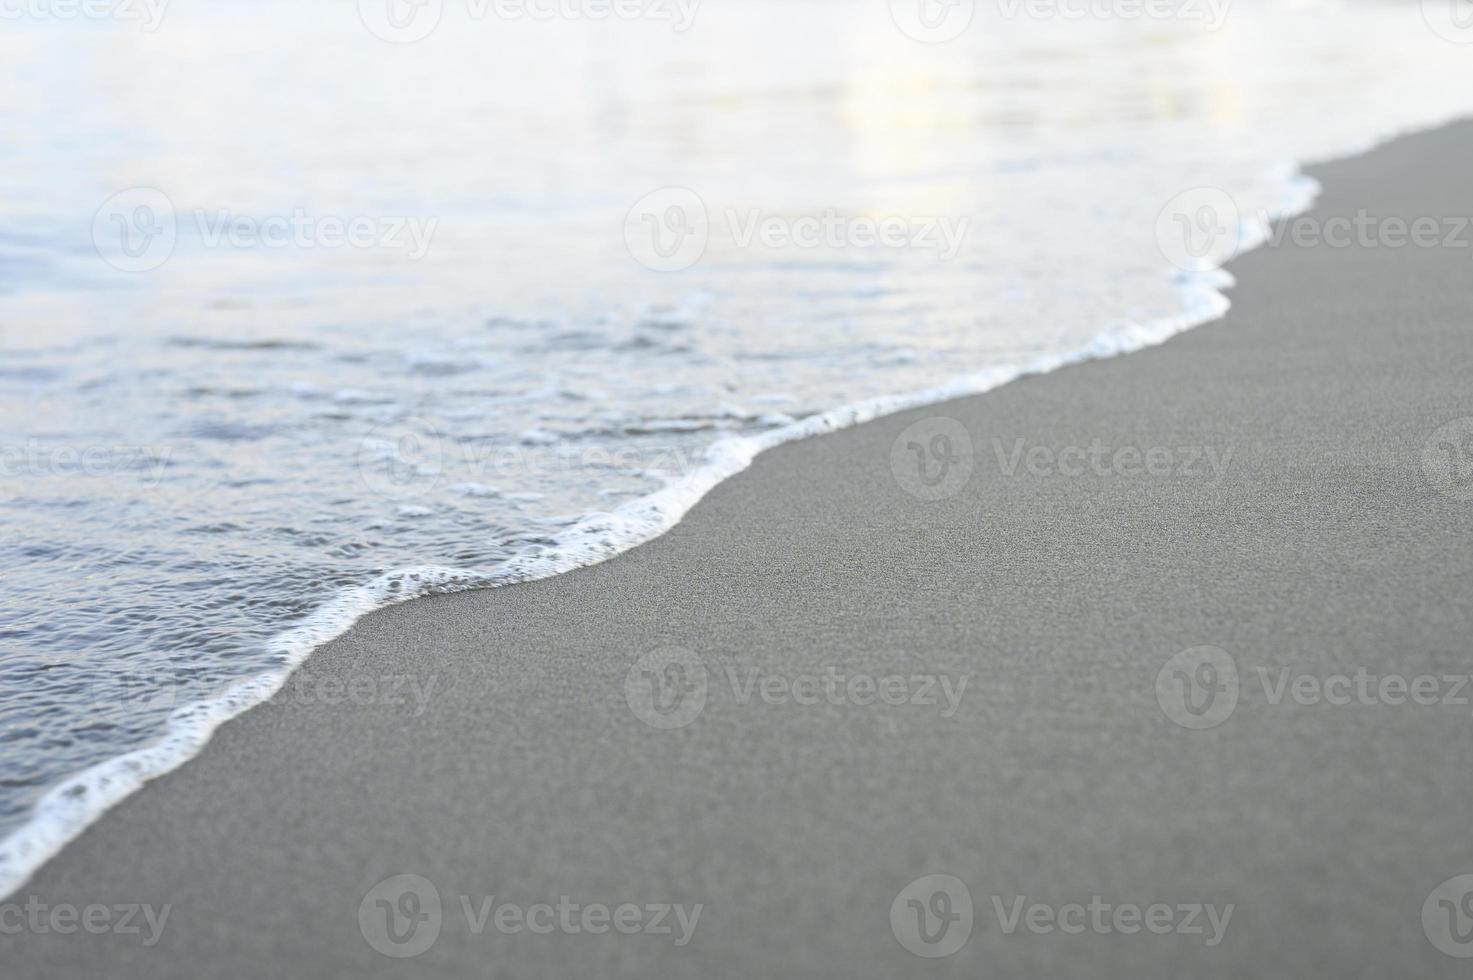 verschwommene Welle des Meeres am abendlichen Sandstrand foto